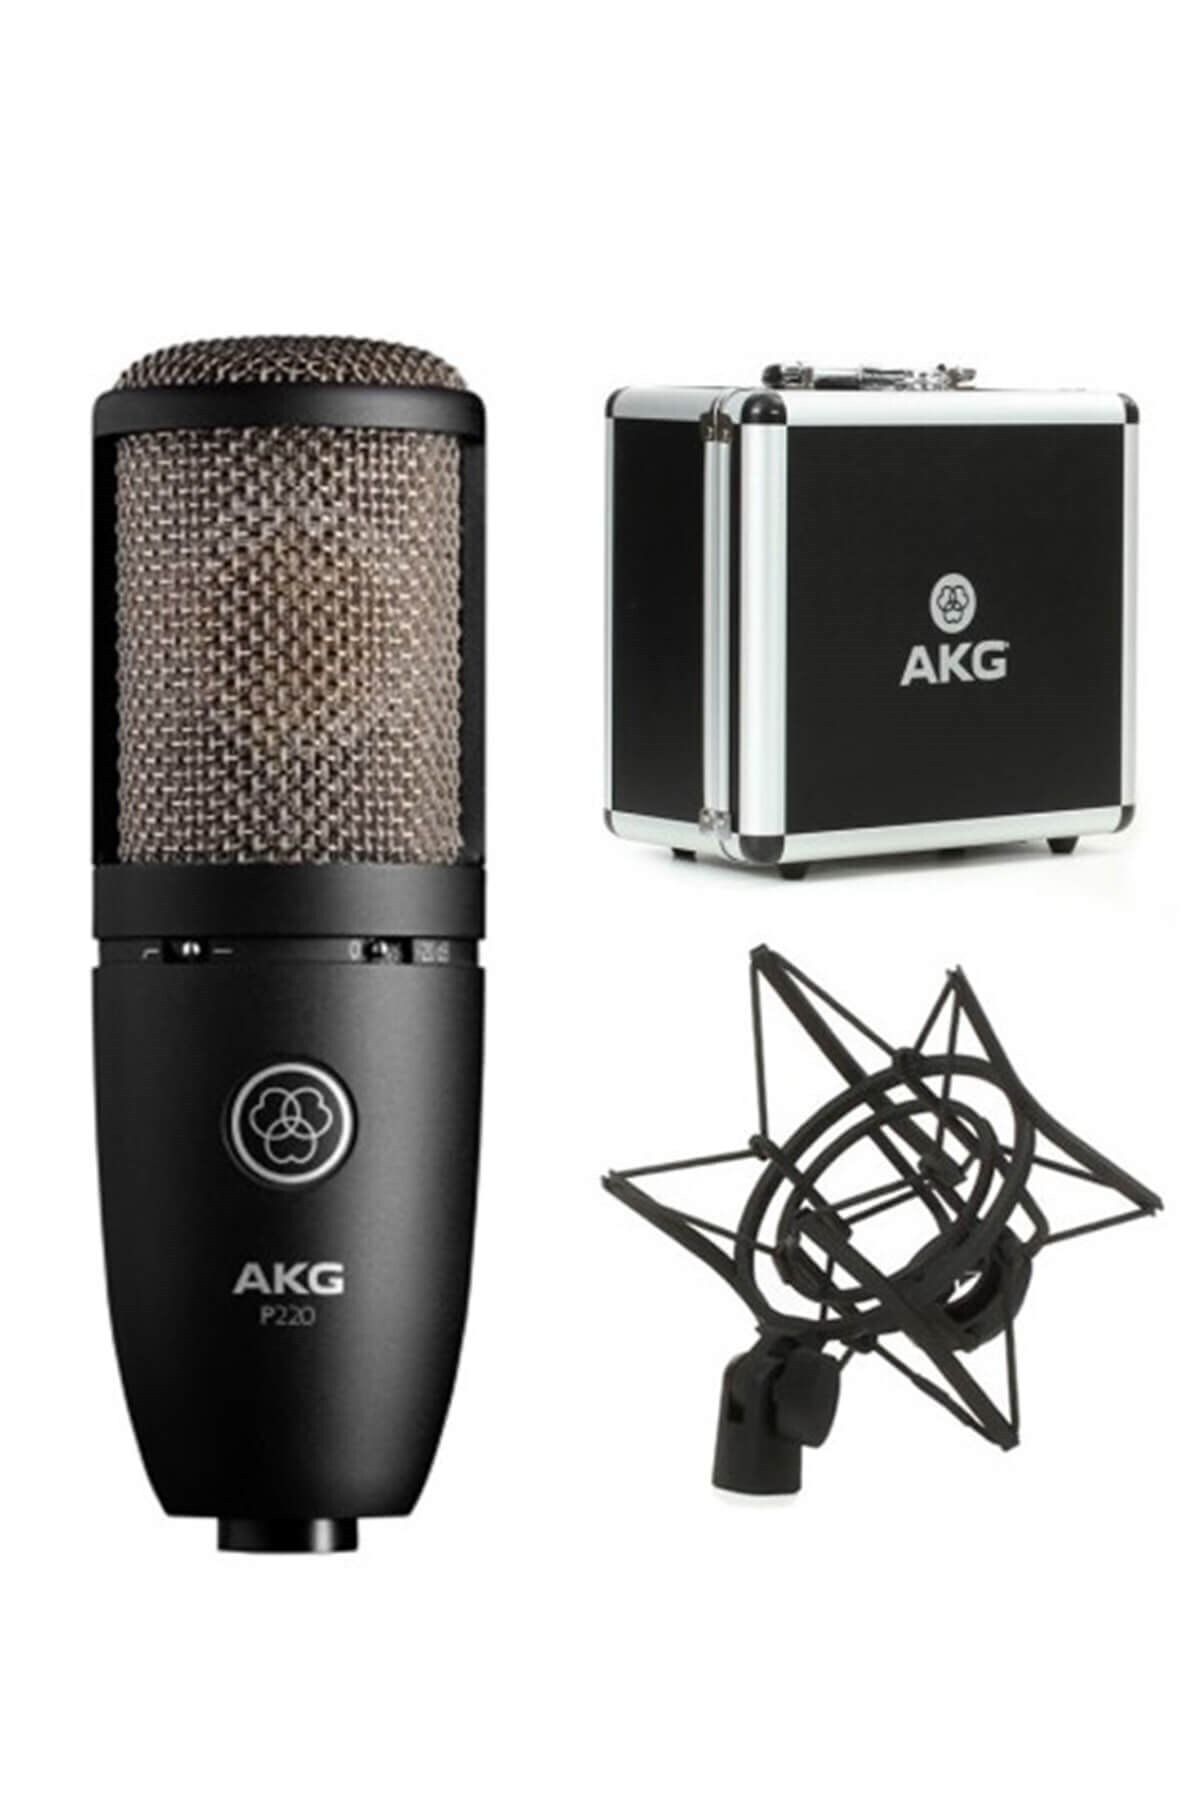 Akg P220 Kondenser Mikrofon